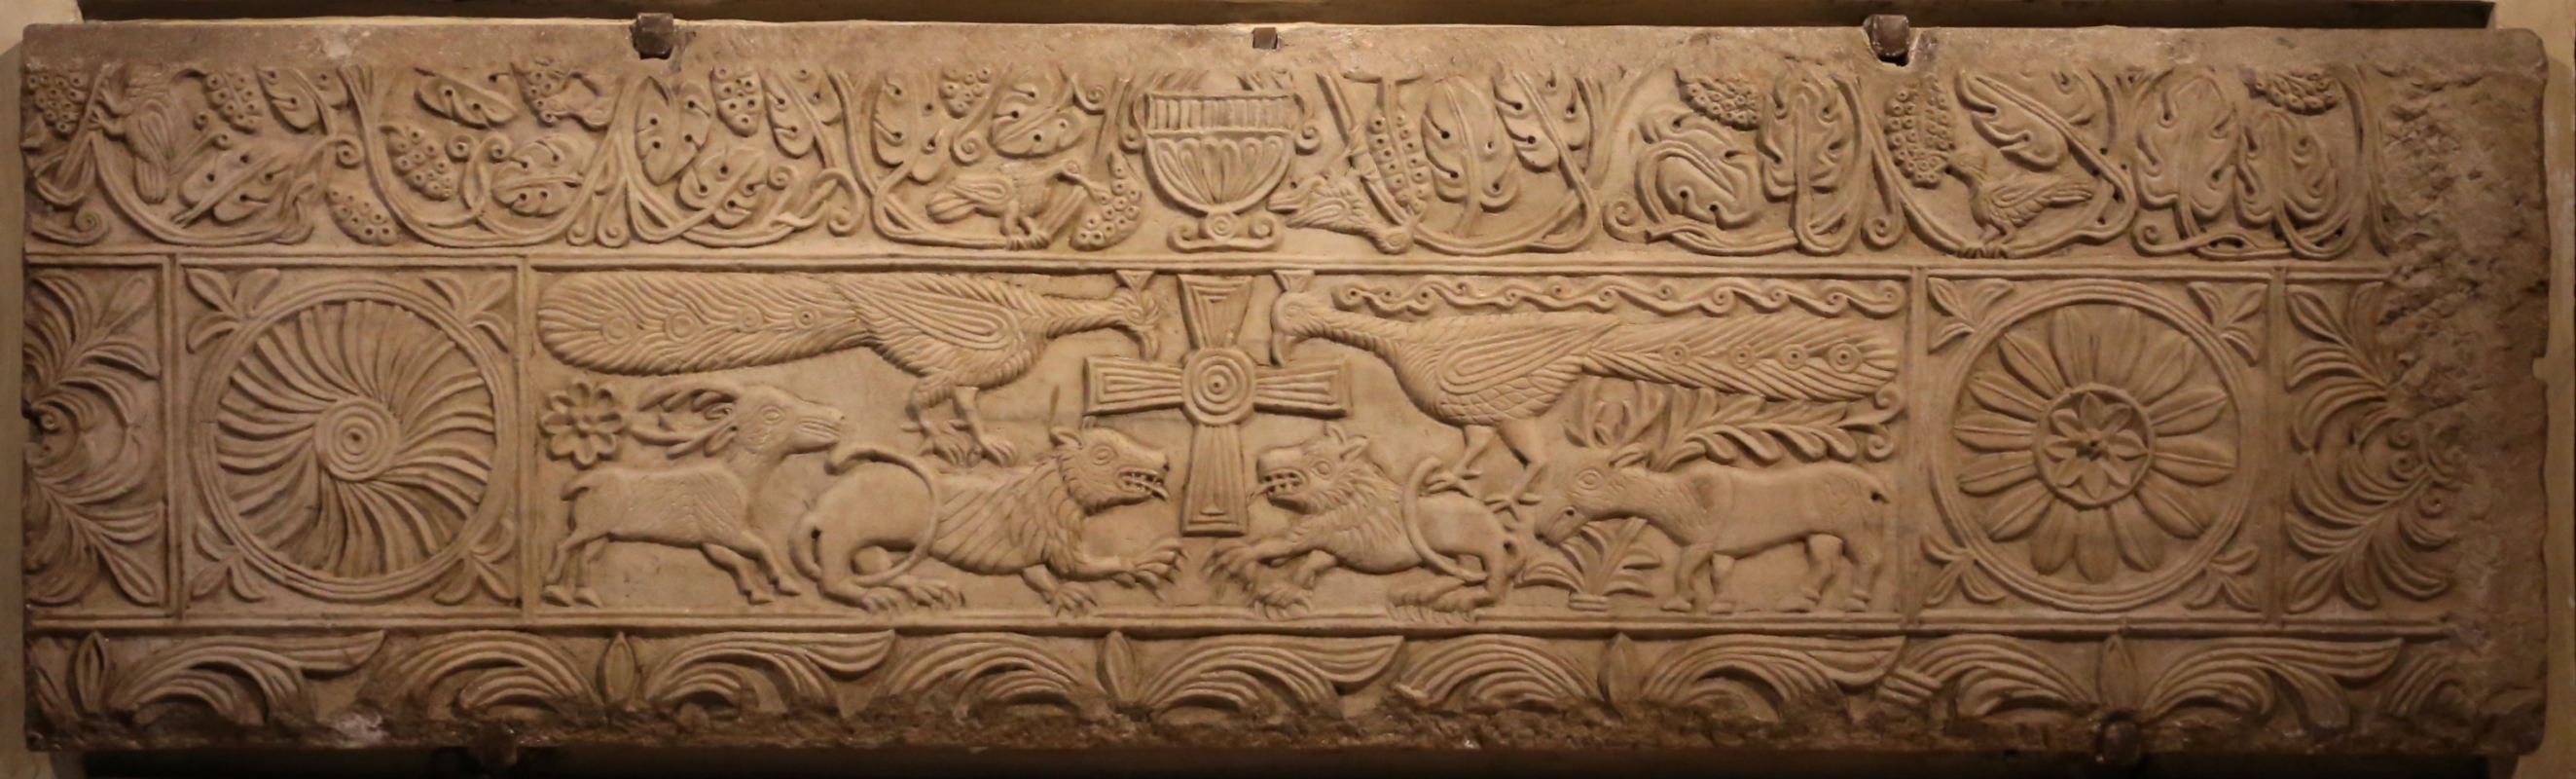 Lastra con la croce e animali affrontati, ix secolo 2 - Sailko